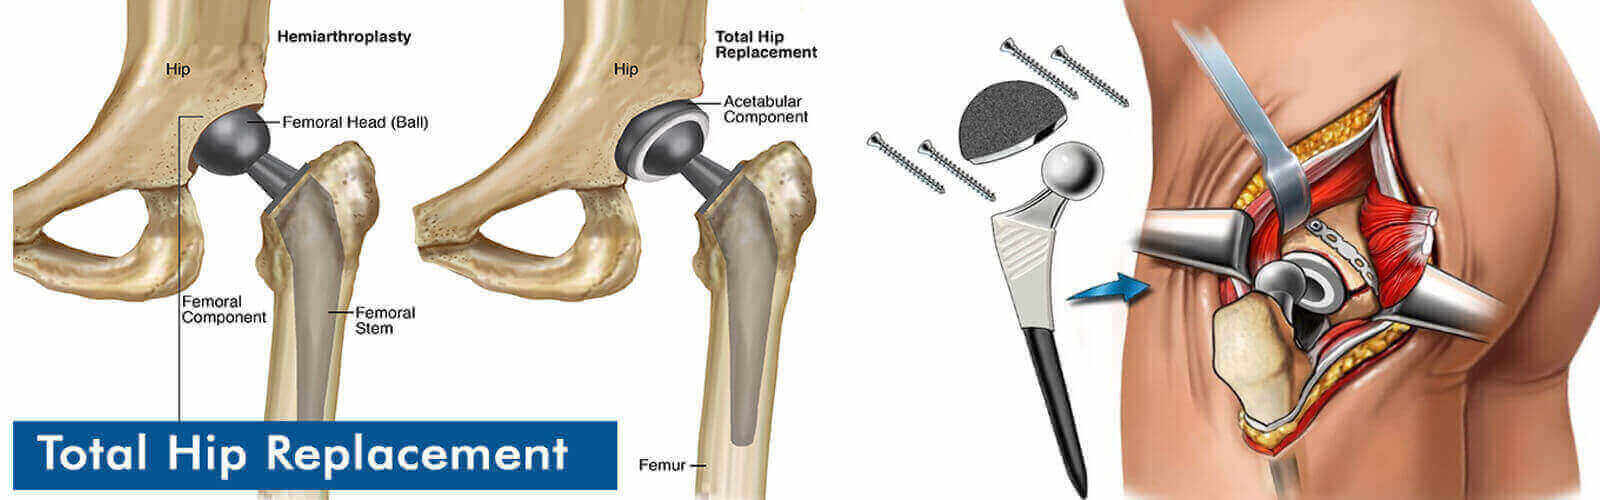 Hip Replacement Surgery Or Hip Resurfacing in Pakistan